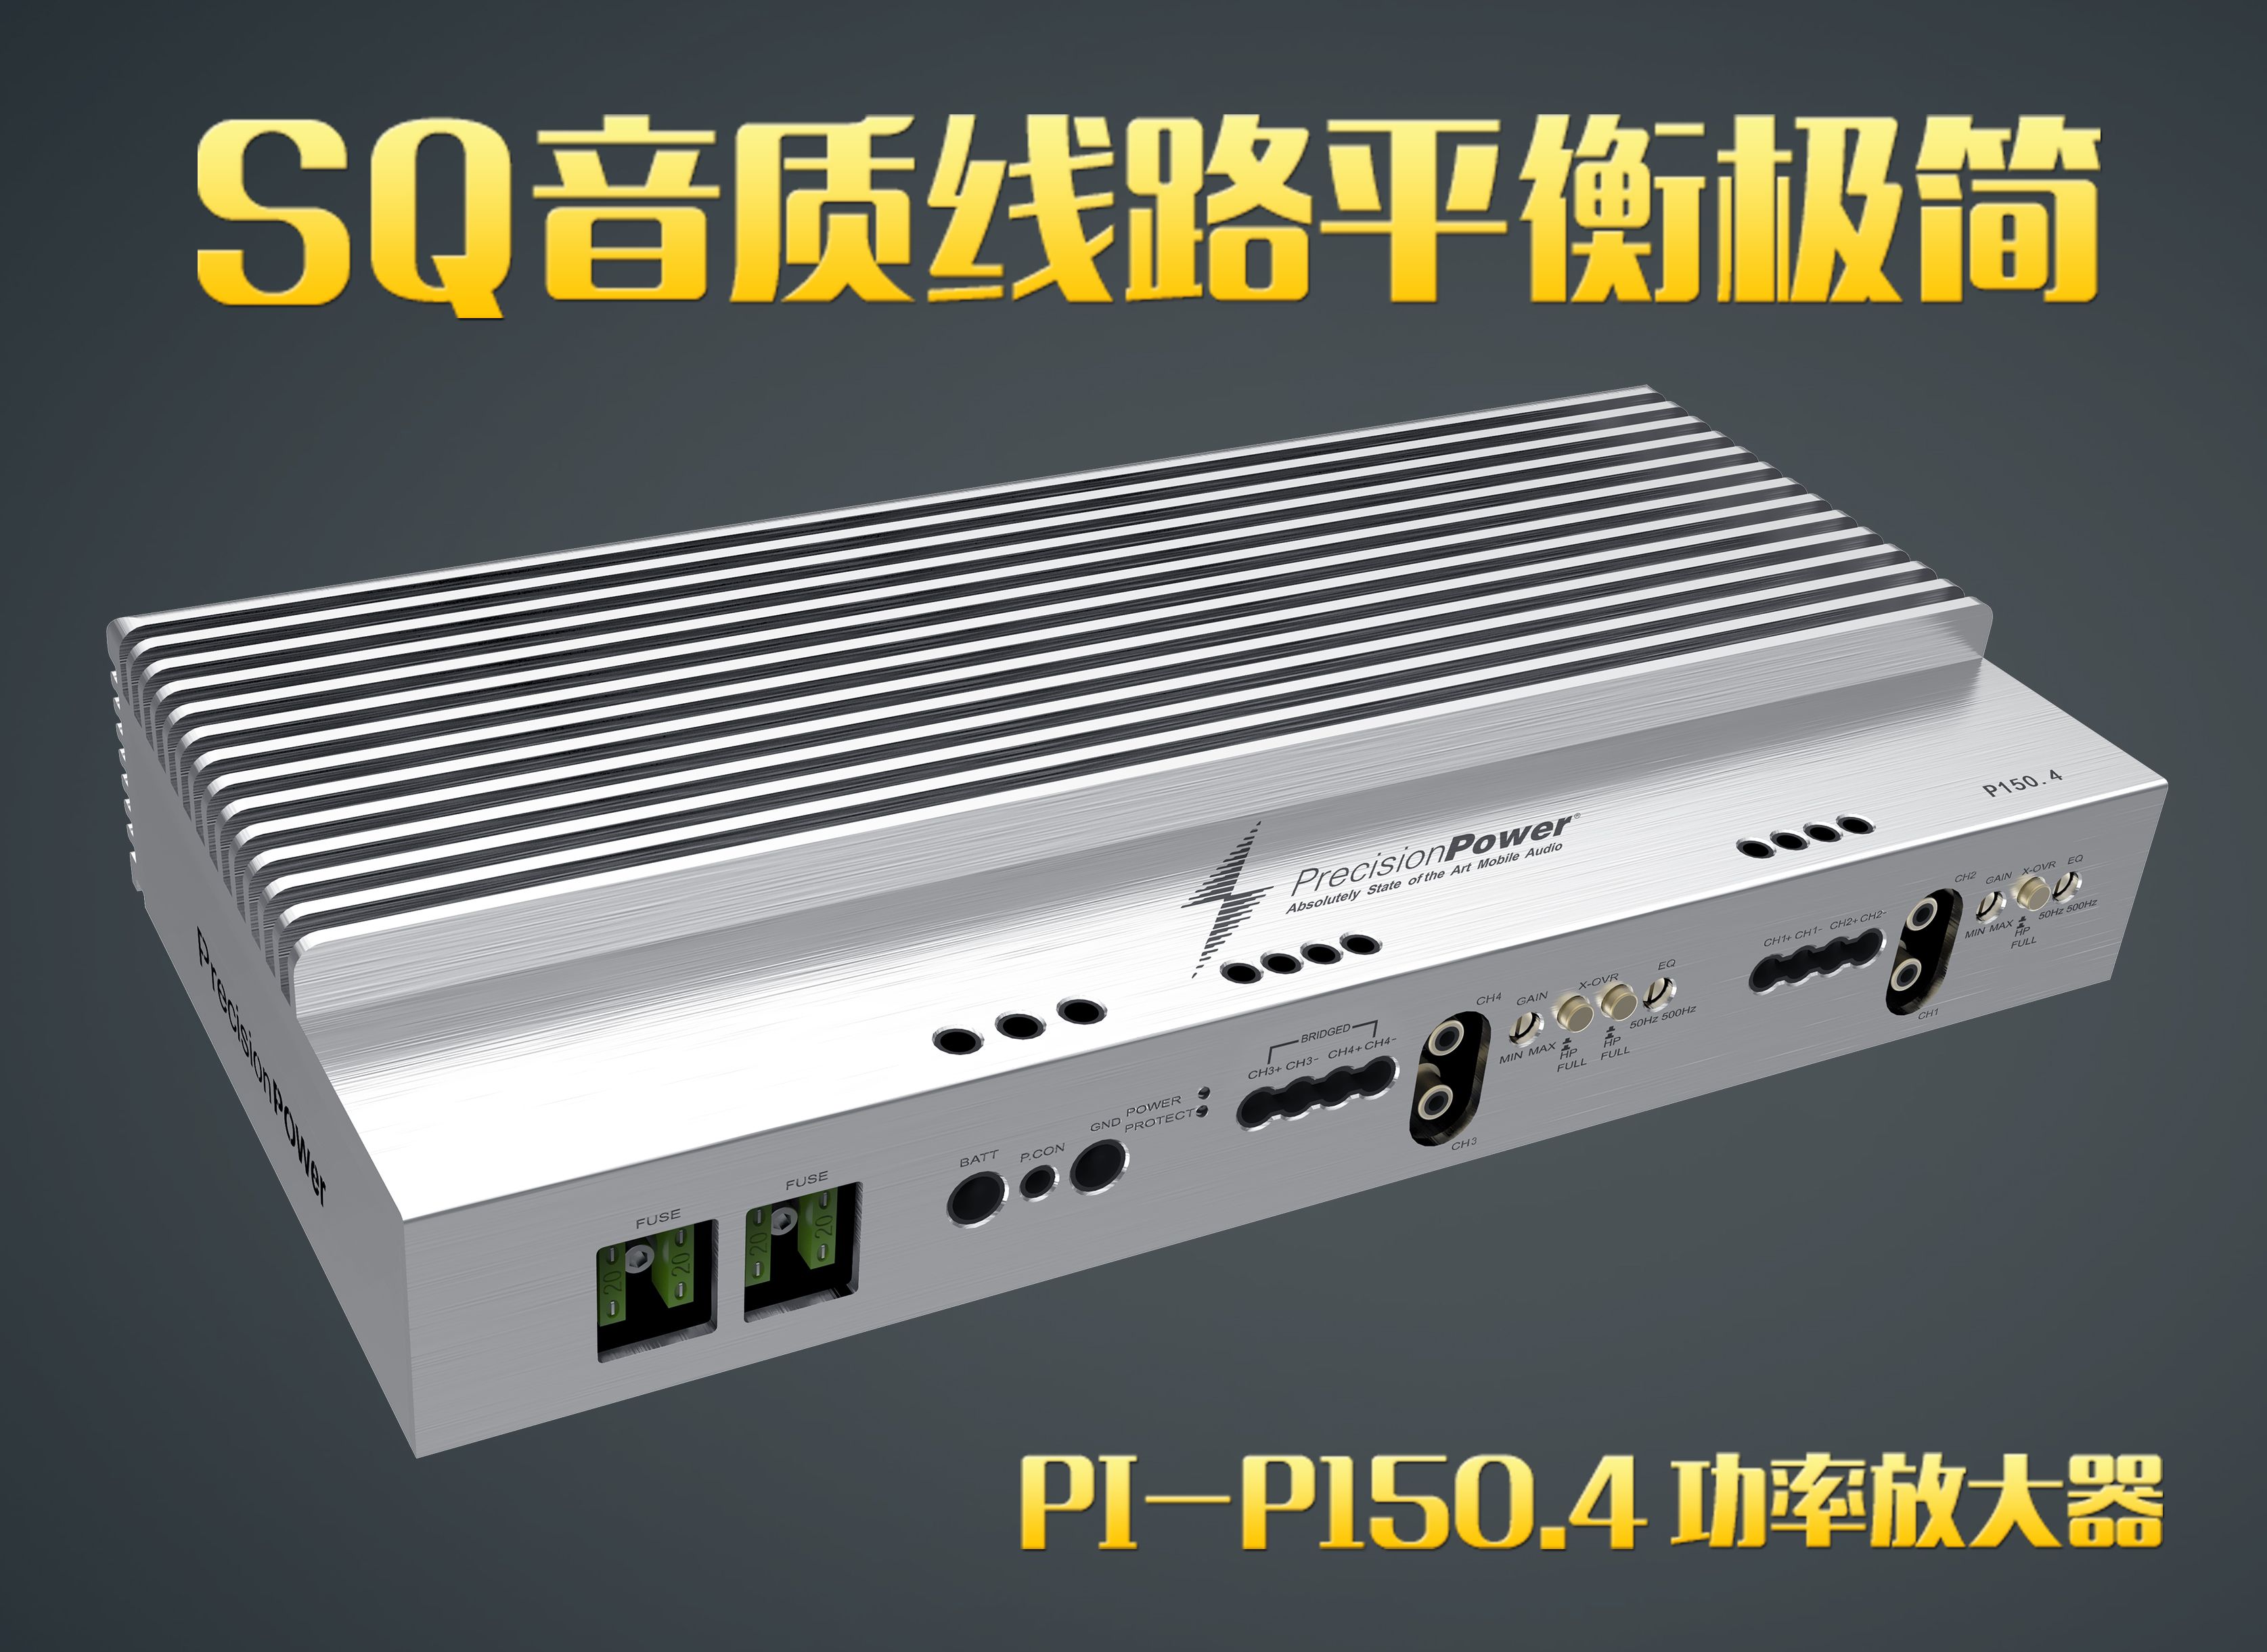 PPI-150.4